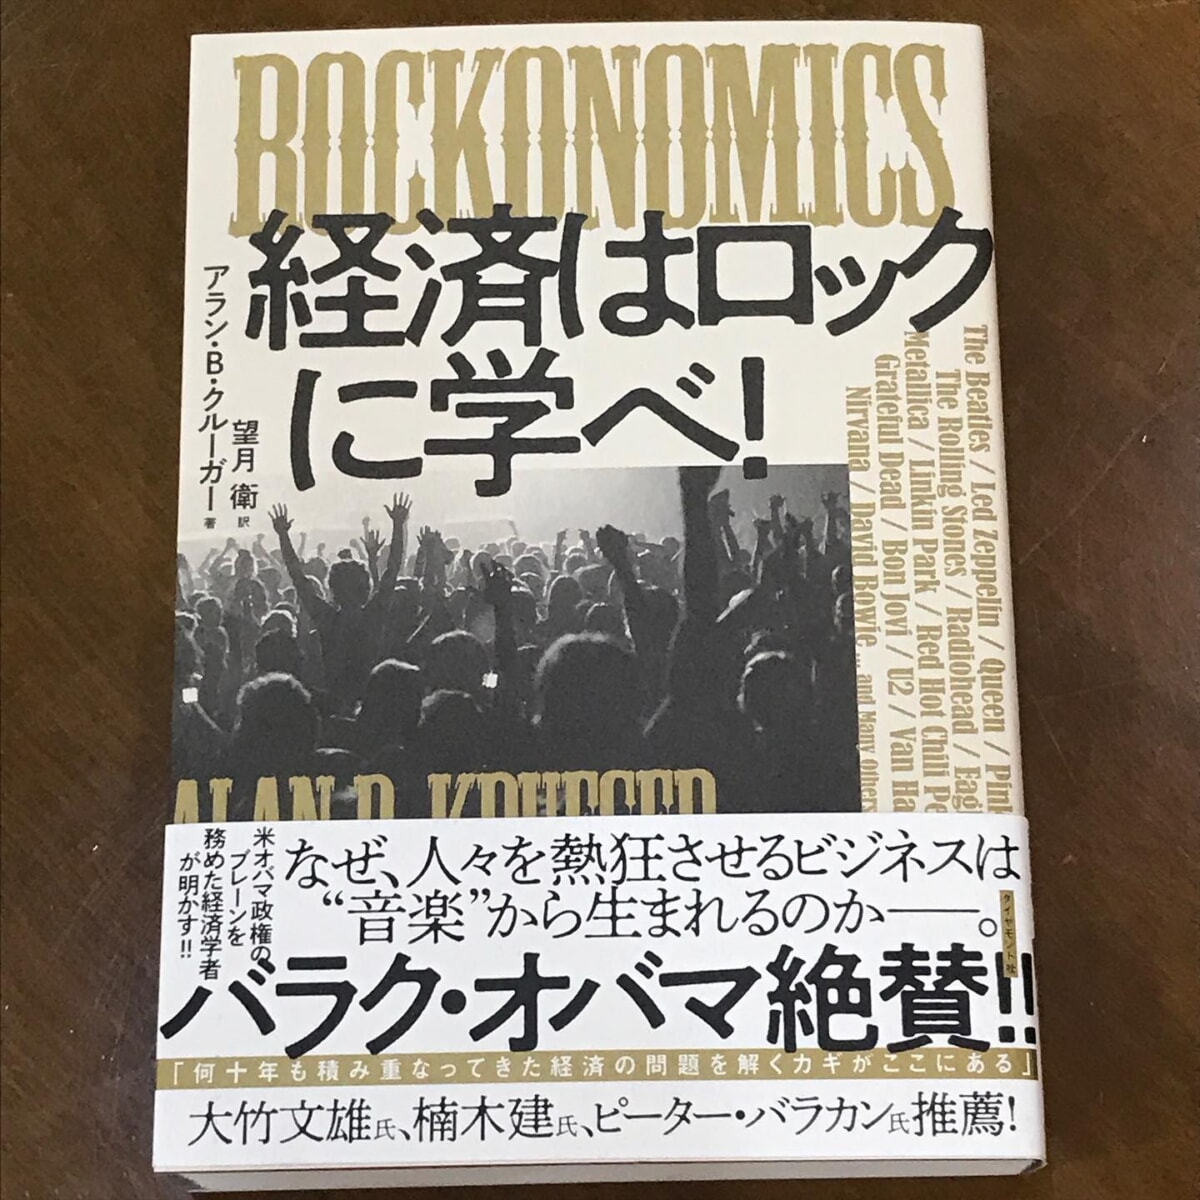 経済はロックに学べ！マイスタ文庫の注目の新刊！日本初の #コワーキングスペース #カフーツ の伊藤さんのオススメ本。が、やっと届きました♪まだ、中身を読んでませんちゃんと読みますよ何を隠そう、#マイスタ加古川 の運営者の私は、#元バンドマン なんです。#ベーシスト ですまぁ少ししかやってないので、大きな声では言ってないッスだから、知らない人も多いかも。#コワーキング 関係者には、元バンドマンや音楽関係者が多いと、コワーキング界隈の人たちと話すとあるあるの話なんです。ちゃんとした統計データはないけど、かなりの確率で音楽をやっていた、やっている人が多いのは本当の話。推測だけど、セッションをしたり、他のメンバーの呼吸に合わせて演奏するなど、#協働 や #個性を活かす #プレー （演奏）が、底辺にあるから、コワーキングの根底に生きているのかなっていう話にたいてい落ち着く。そして、 #リズム隊 と呼ばれる、#ドラム 🥁や #ベース などリズムを刻む楽器の人が多い。きっと、深層の部分で何か共通項というか、#コミュニティマネージャー の必要要素があるのかもネ。さて、この本だが、最近、接点の多い伊藤さんのオススメで、とにかく読み応えがあると聞いたので購入した。#ロック と #経済学 に相関関係、いや、ロックに経済学のお手本が隠されているのでは？と、ちょっと興奮しているマイスタ加古川では、私の蔵書を #私設図書館 「マイスタ文庫」として、自由に読んでいただけるように、施設内の本棚に置いています。ご利用者が他の方に読んでもらいたいと、置き本もあります。貯めたポイントでも、話題の本を購入しているので、ちょこちょこ増えていますよ。新書、AI、プログラム言語、ネット、wordpressビジネス書、自己啓発本、デザイン、告知絵本、子育て、教育DIY、趣味など、広い分野の本があります。知り合いのツテで、本の共同購入で少しだけ割引がありますので、ご注文を一緒に❣というのもありですヨ。#マイスタ加古川 #兵庫県 #加古川市 #加古川 #寺家町 #クリエイトスペース #モノづくりスペース #モノづくり#コト起こし #イメージが形に#化学反応が生まれる場所 #大人の部活動#レンタルスペース #ワークショップ #ほぼ日刊マイスタ通信 - Instagram投稿